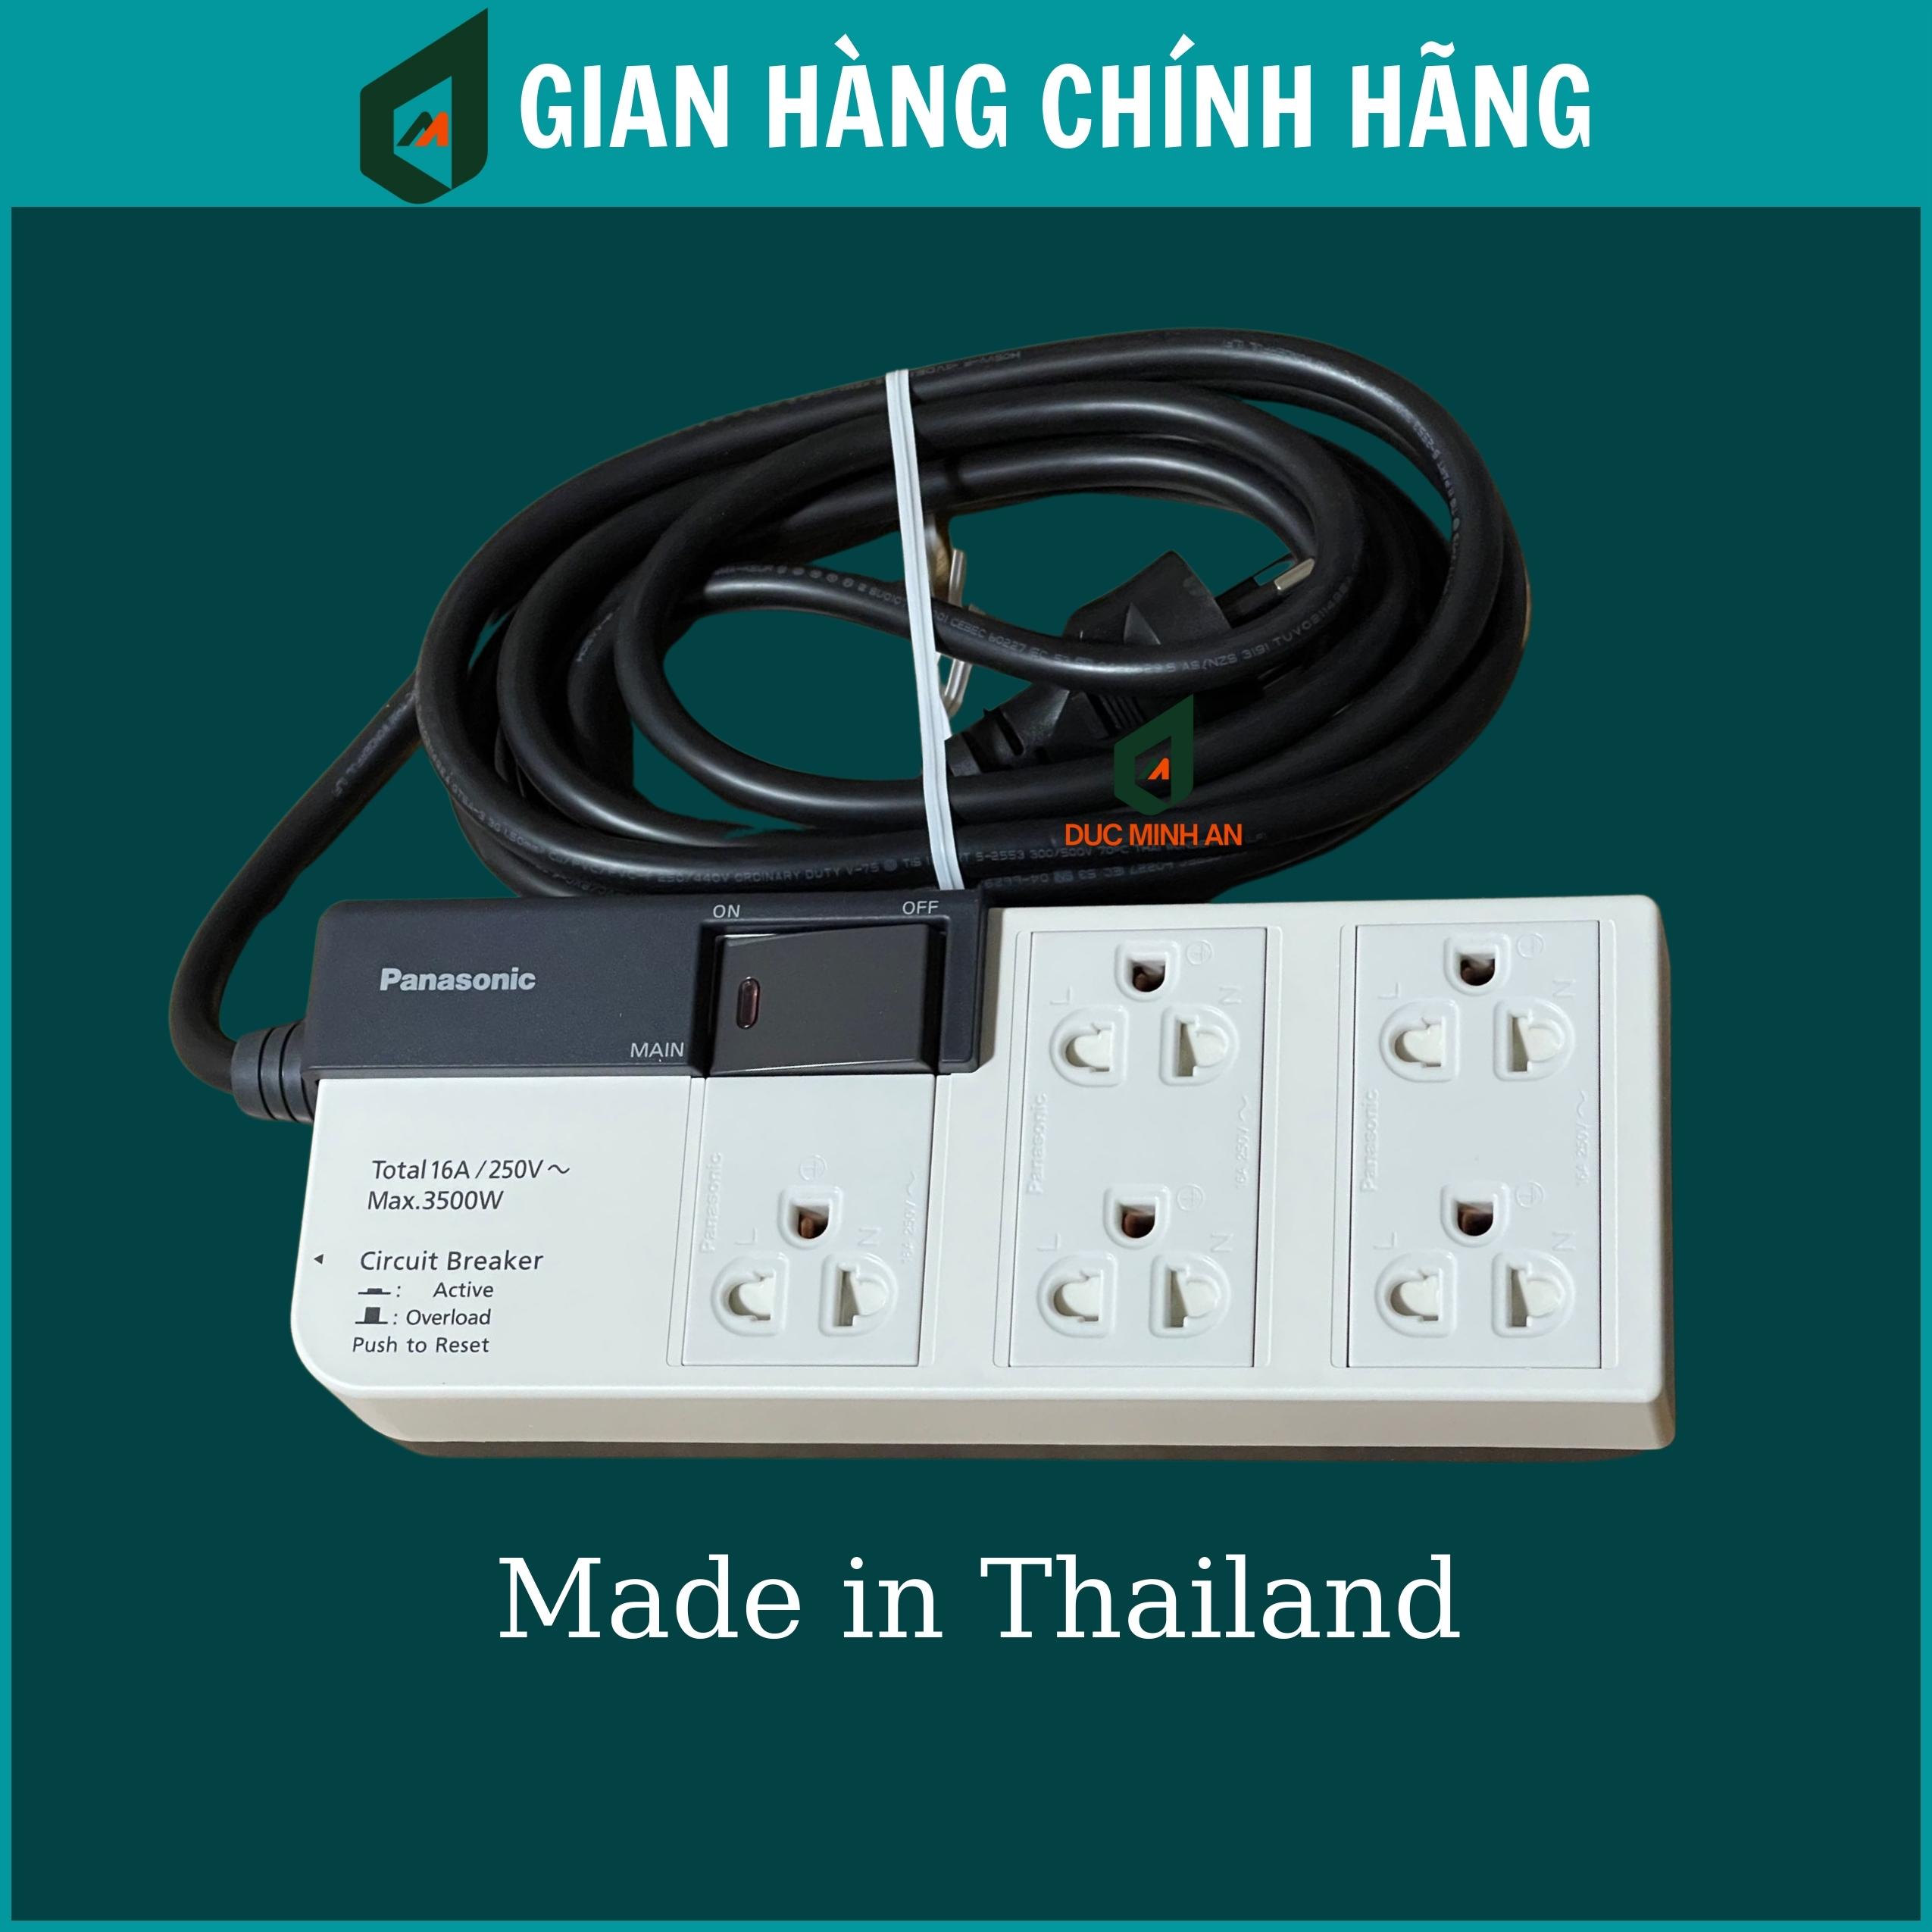 Ổ cắm điện Panasonic có dây kéo dài công suất lớn 3500W, chiều dài dây 3m gồm 5 ổ cắm 1 công tắc, hàng chính hãng sản xuất tại Thái Lan - Ổ cắm nối dài Panasonic WCHG28352